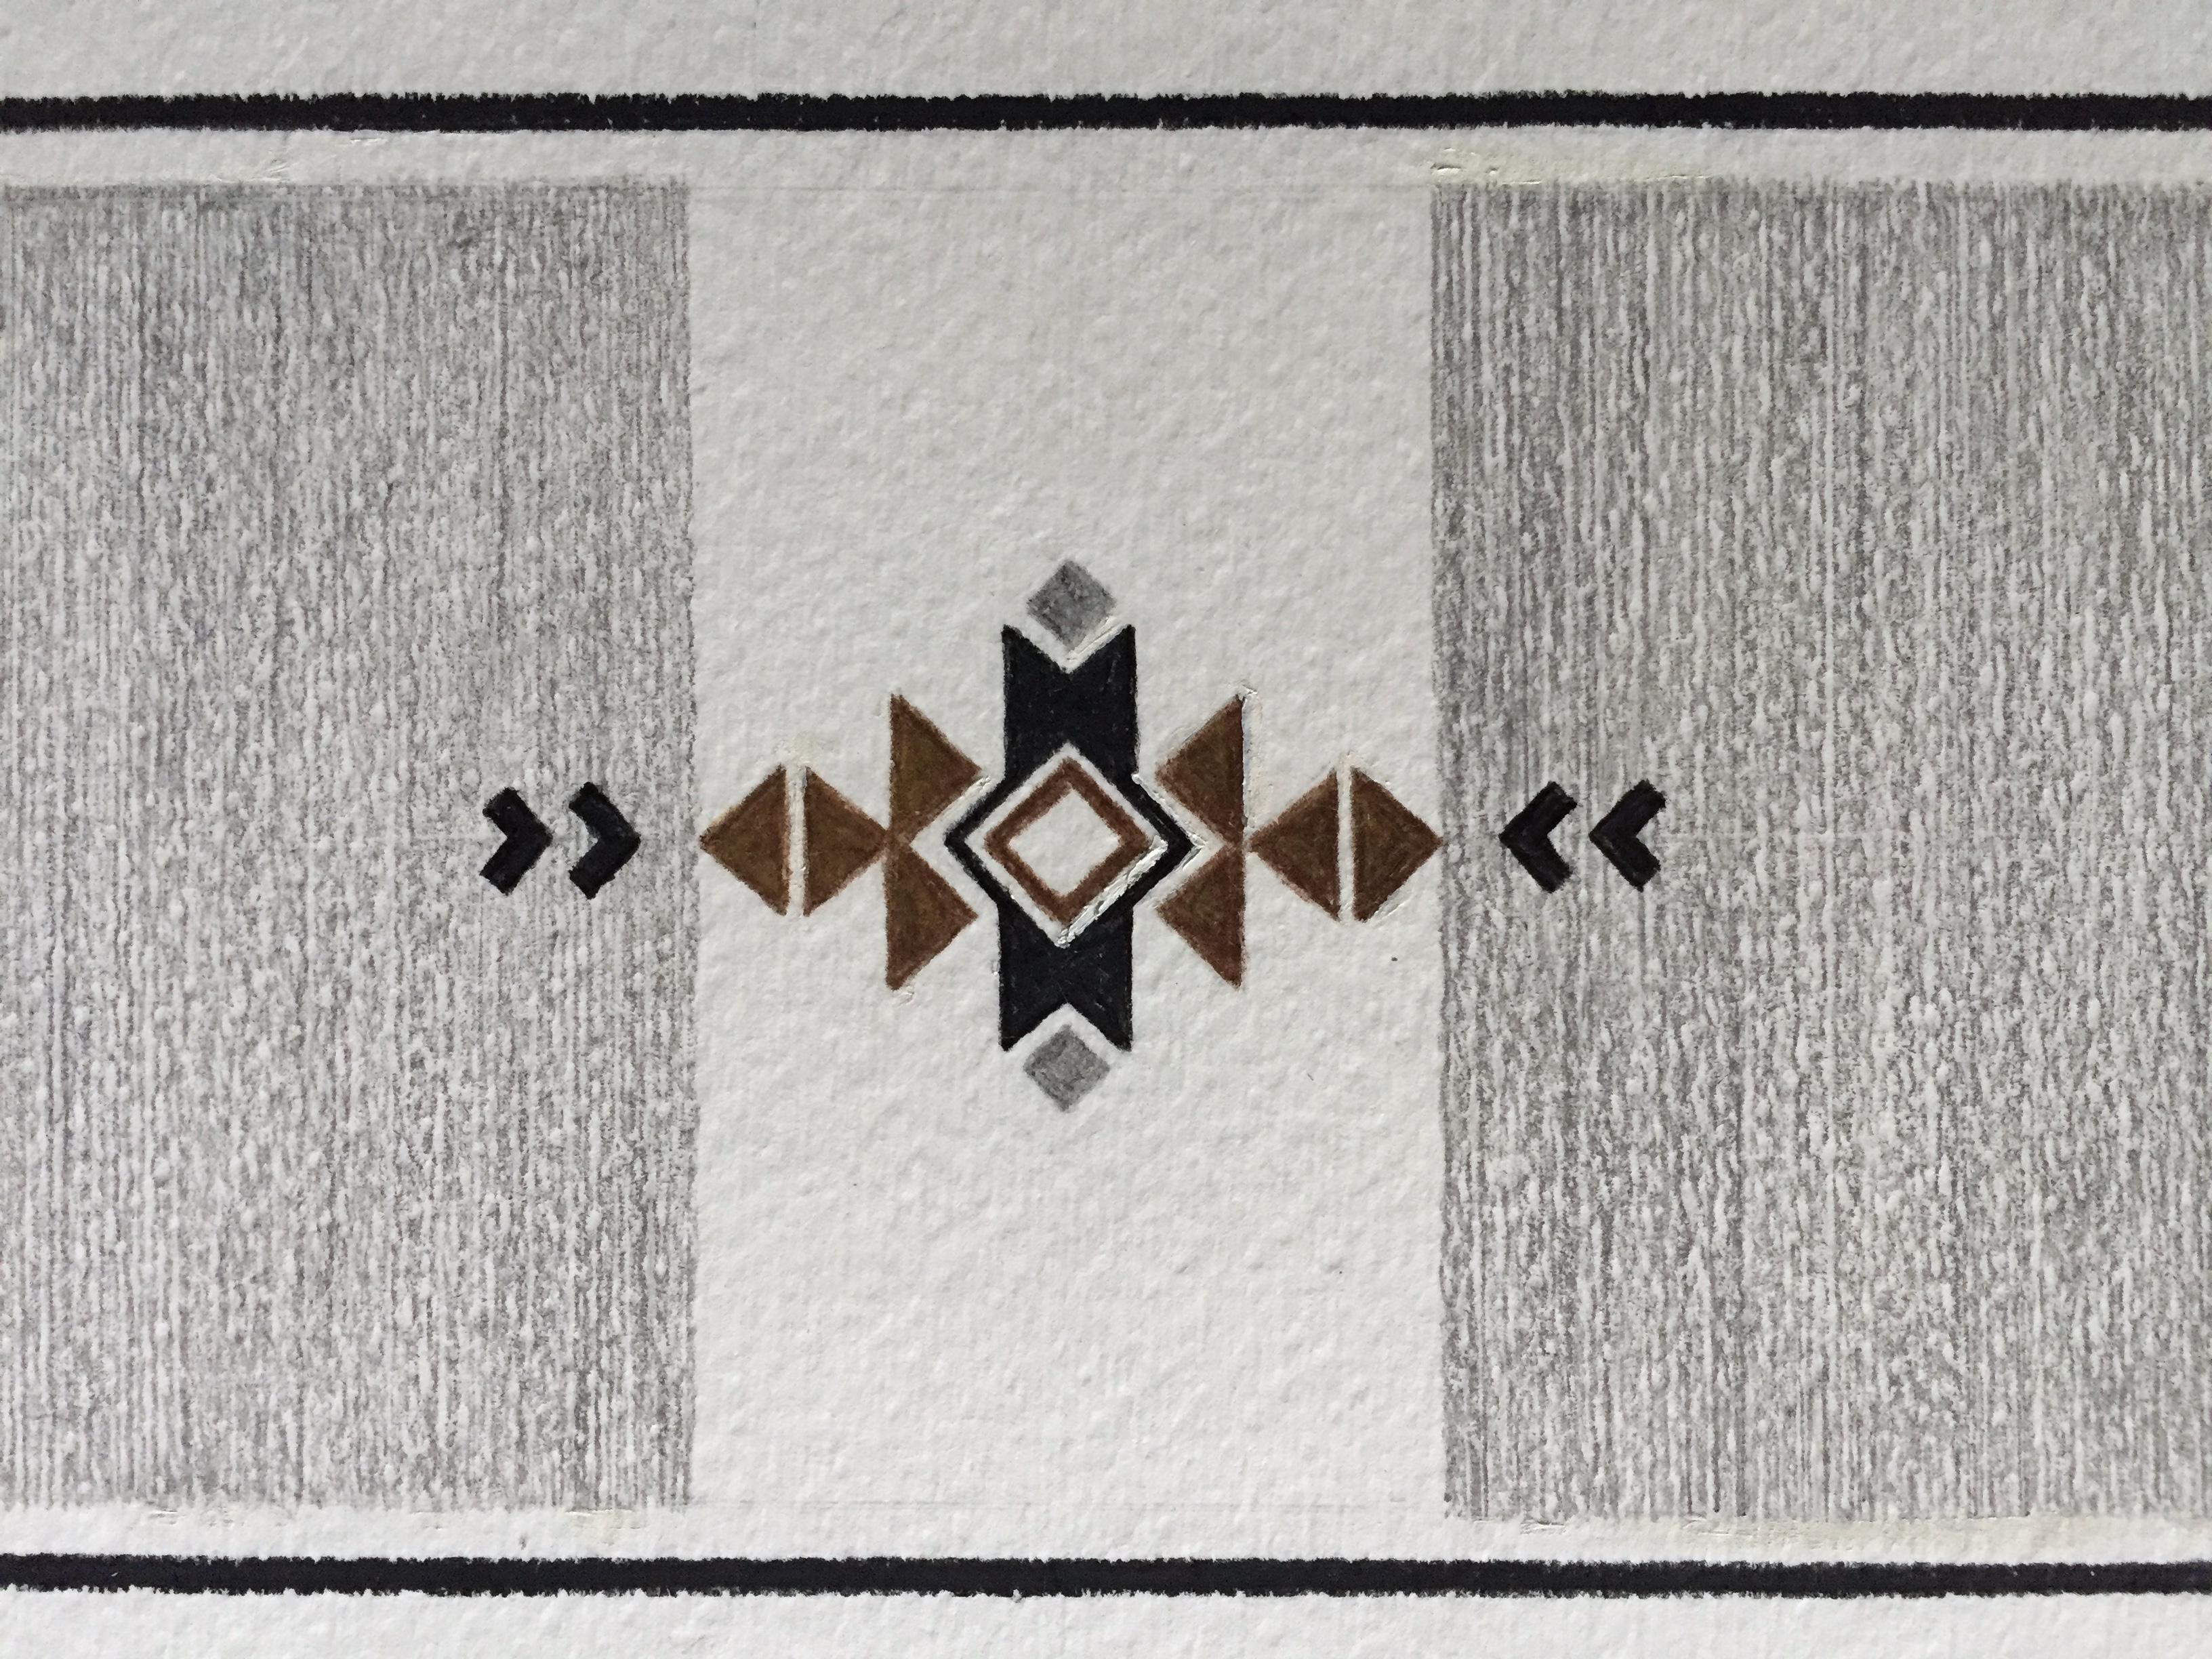 Dieses detaillierte Kunstwerk auf Papier legt den Schwerpunkt auf Design und Komposition. Ein von den Navajos inspiriertes Muster wird mit traditionellen Designelementen erstellt. Das kontrastreiche, geometrische Muster sorgt für ein ansprechendes